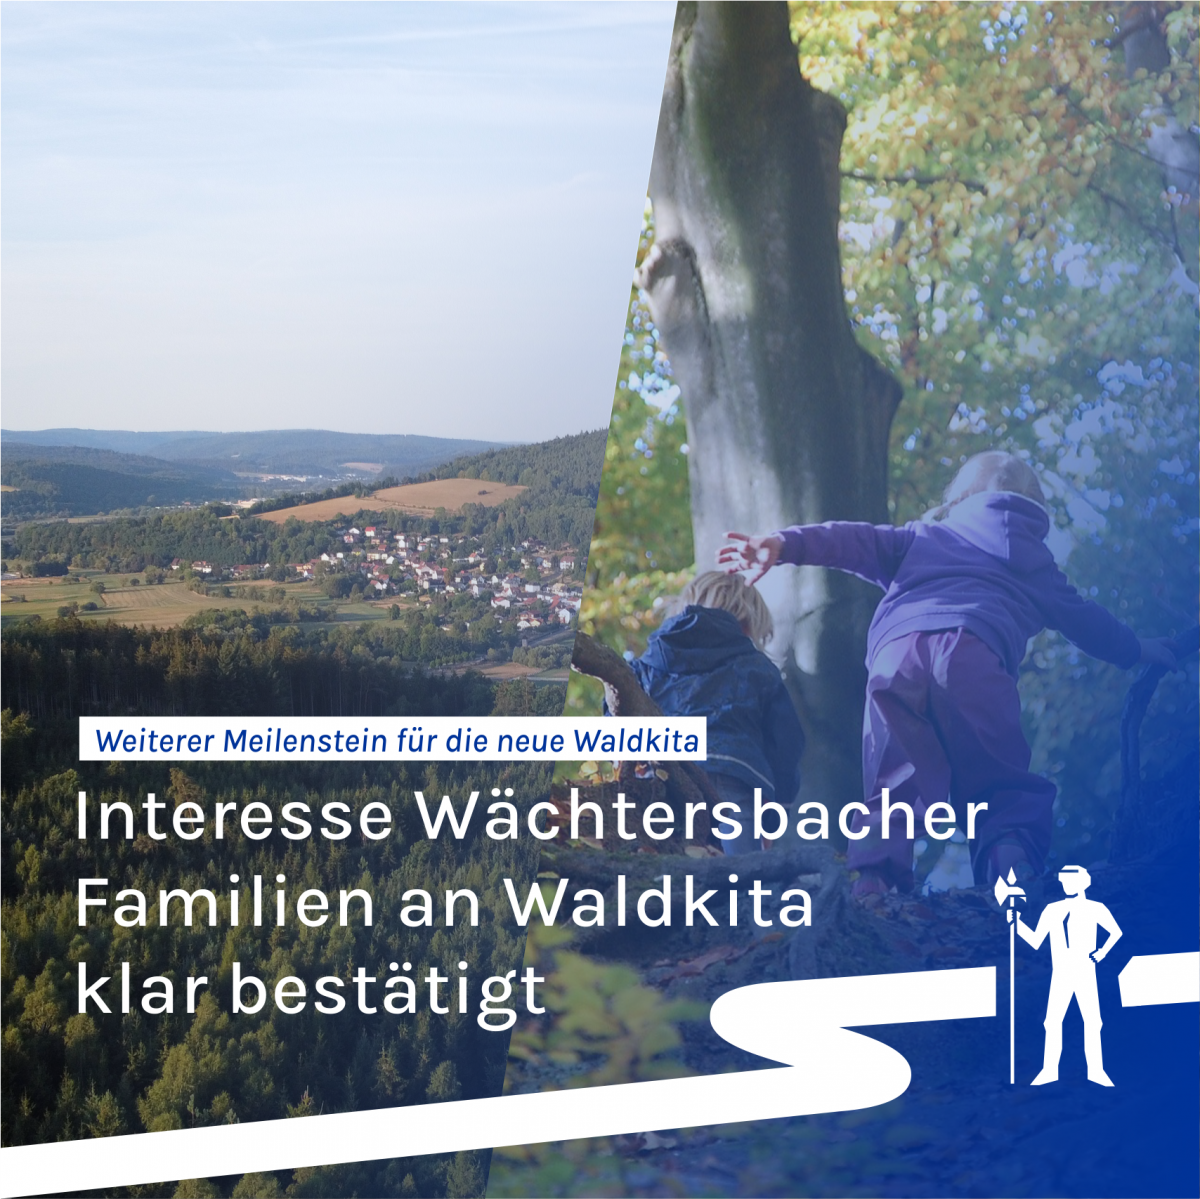 Waldkita für Wächtersbach: Bedarf eindeutig festgestellt